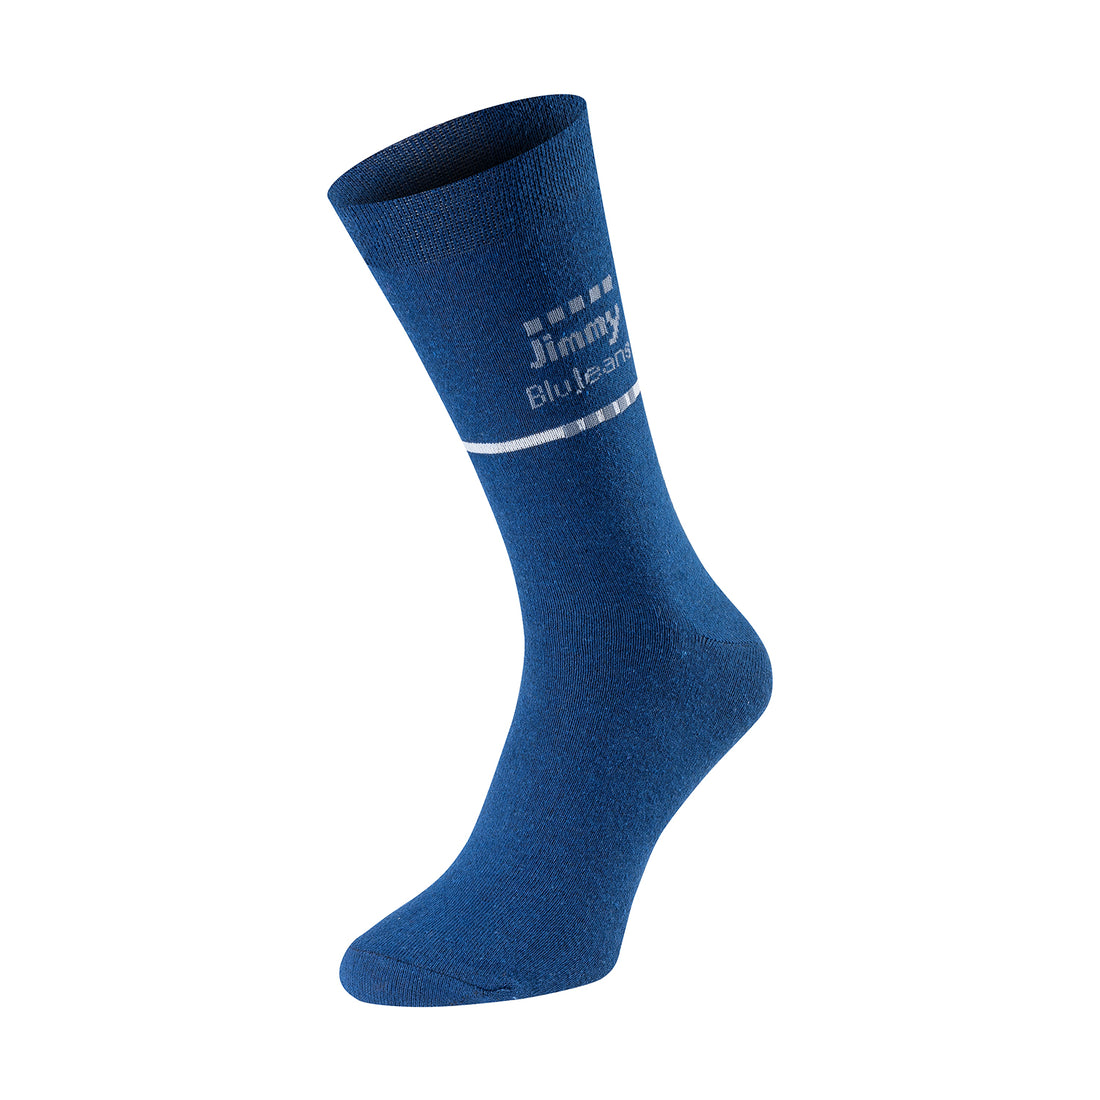 ChiliLifestyle Jimmy BluJeans Socken, 12 Paar, für Damen und Herren